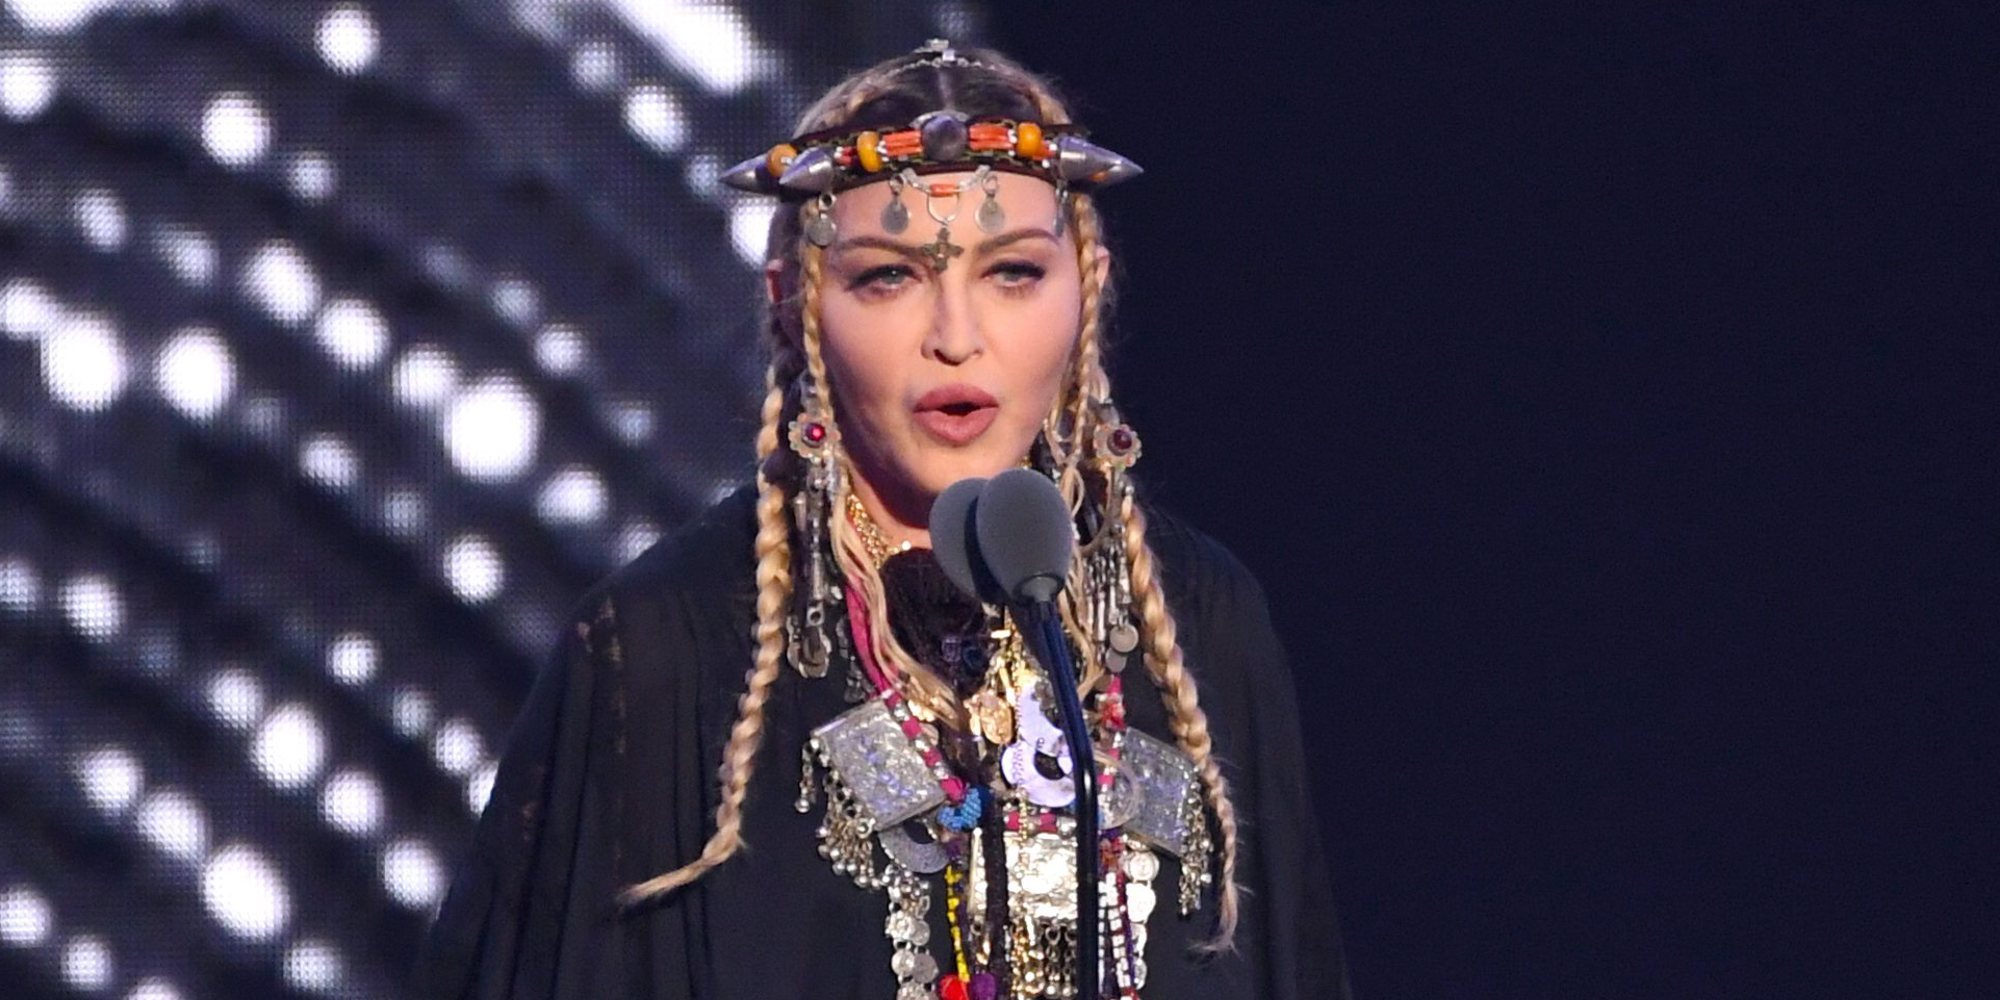 Madonna actuará en Eurovisión 2019 con una canción inédita de su nuevo álbum